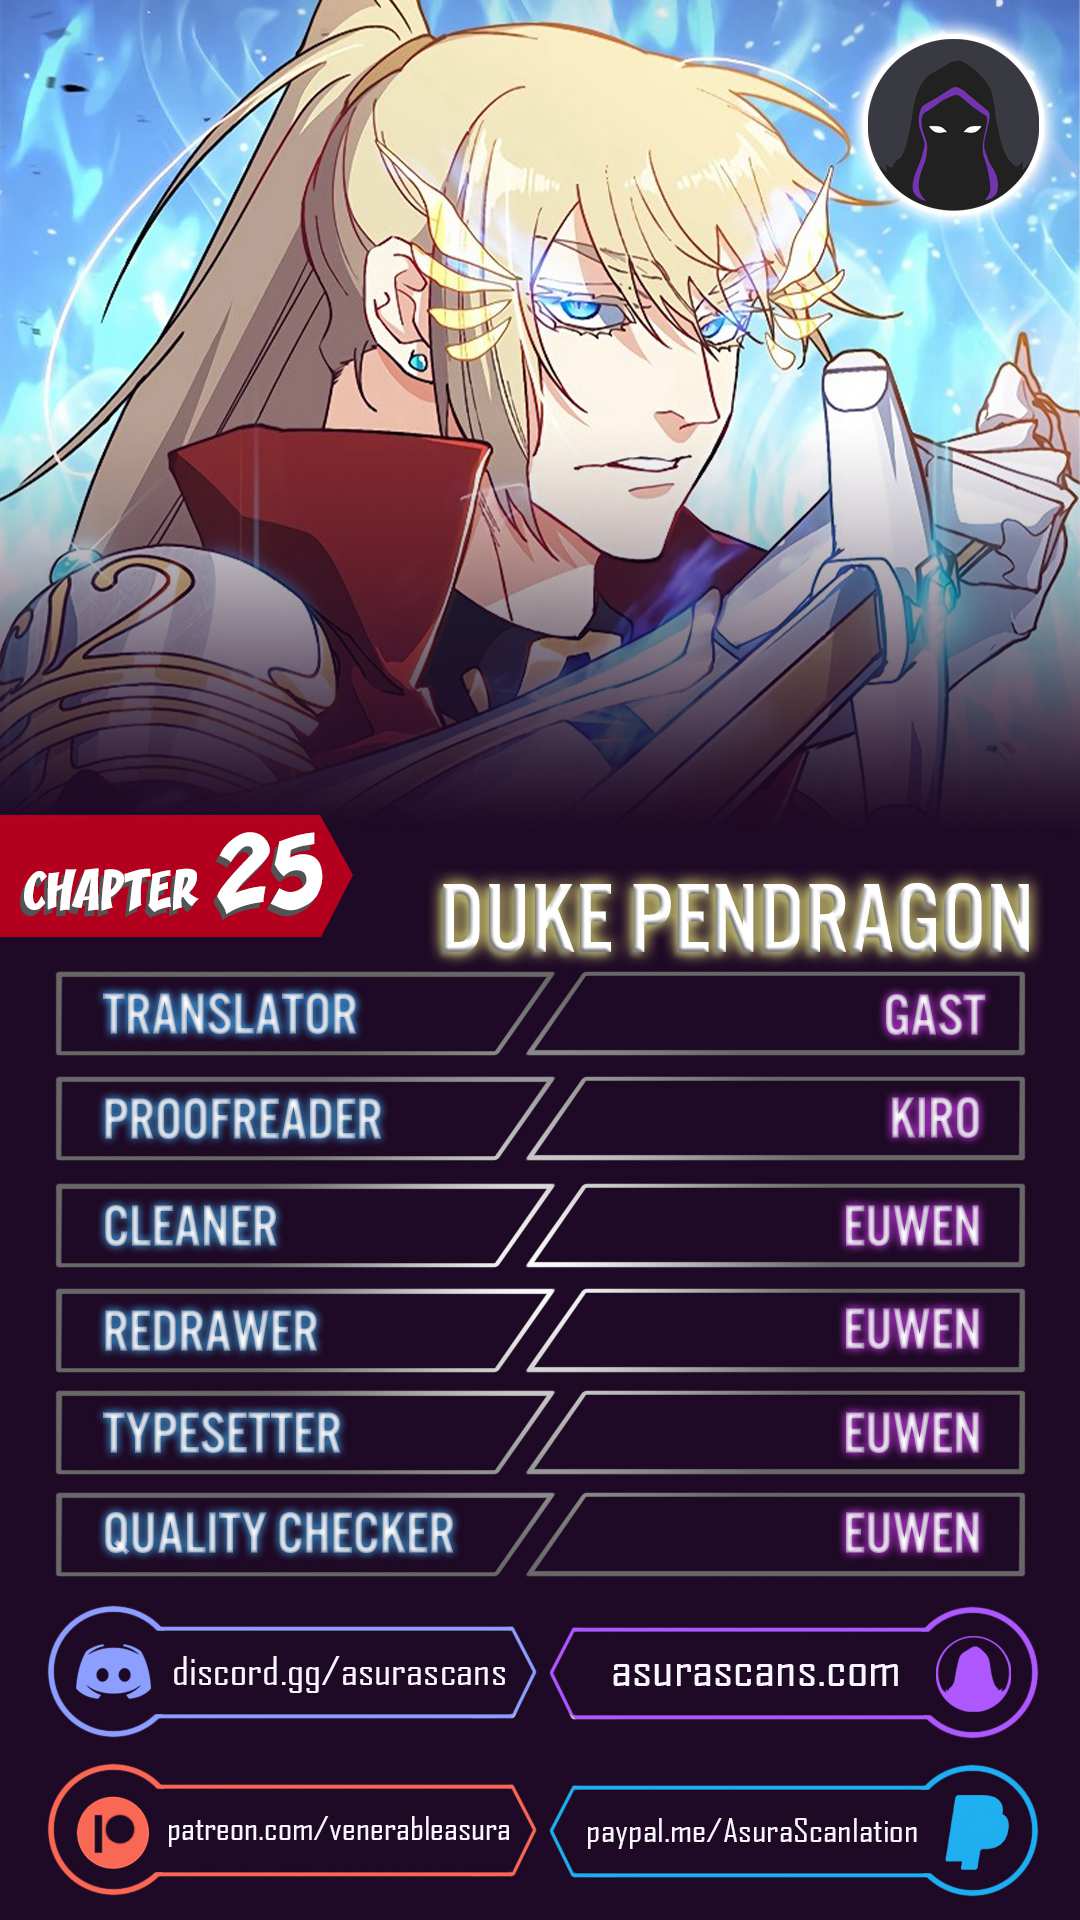 White Dragon Duke: Pendragon chapter 25 page 1